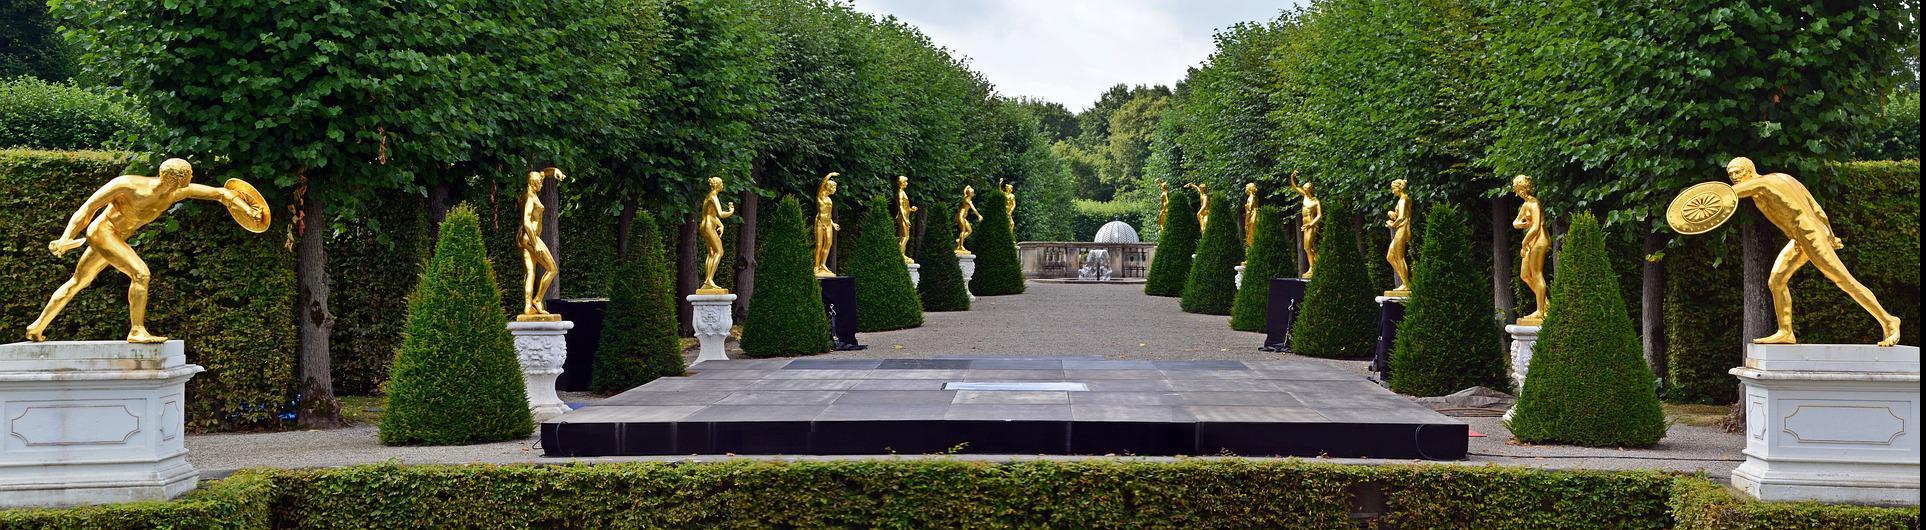 Hannover, Parkanlage mit goldenen Statuen